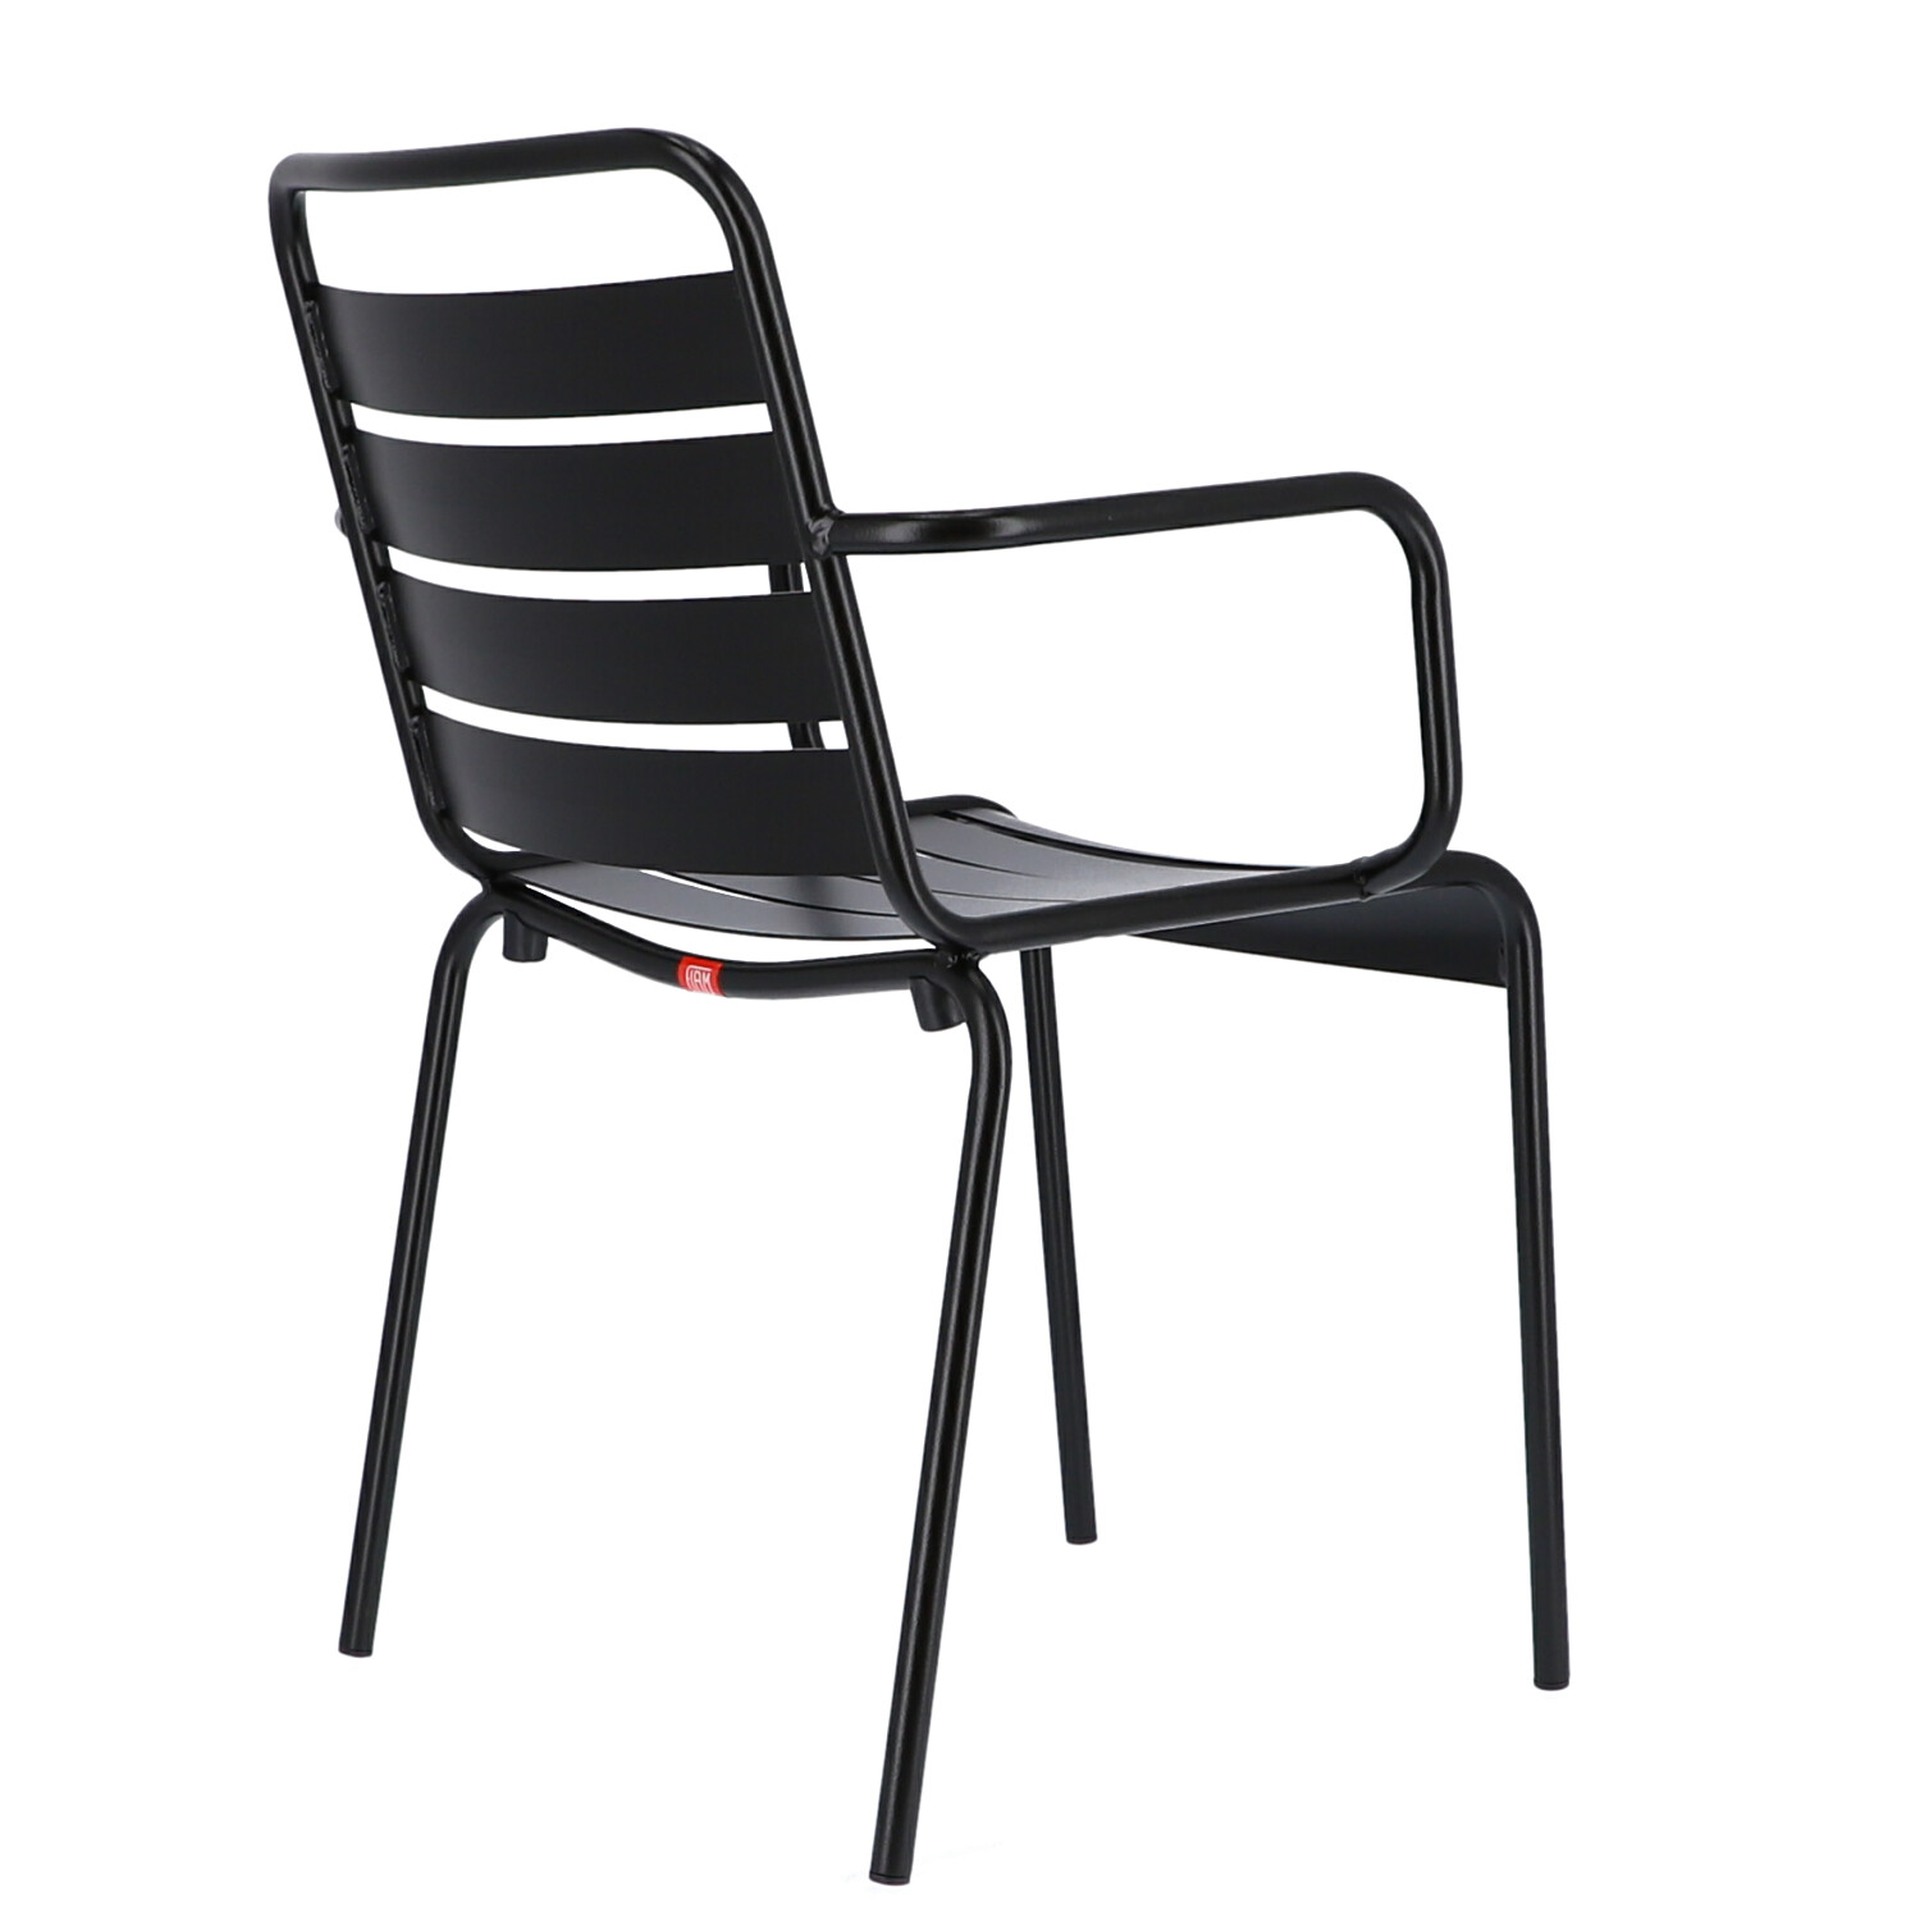 Der moderne Stapelsessel Mya wurde aus Aluminium gefertigt und hat einen schwarzen Farbton. Designet wurde der Sessel von der Marke Jan Kurtz.